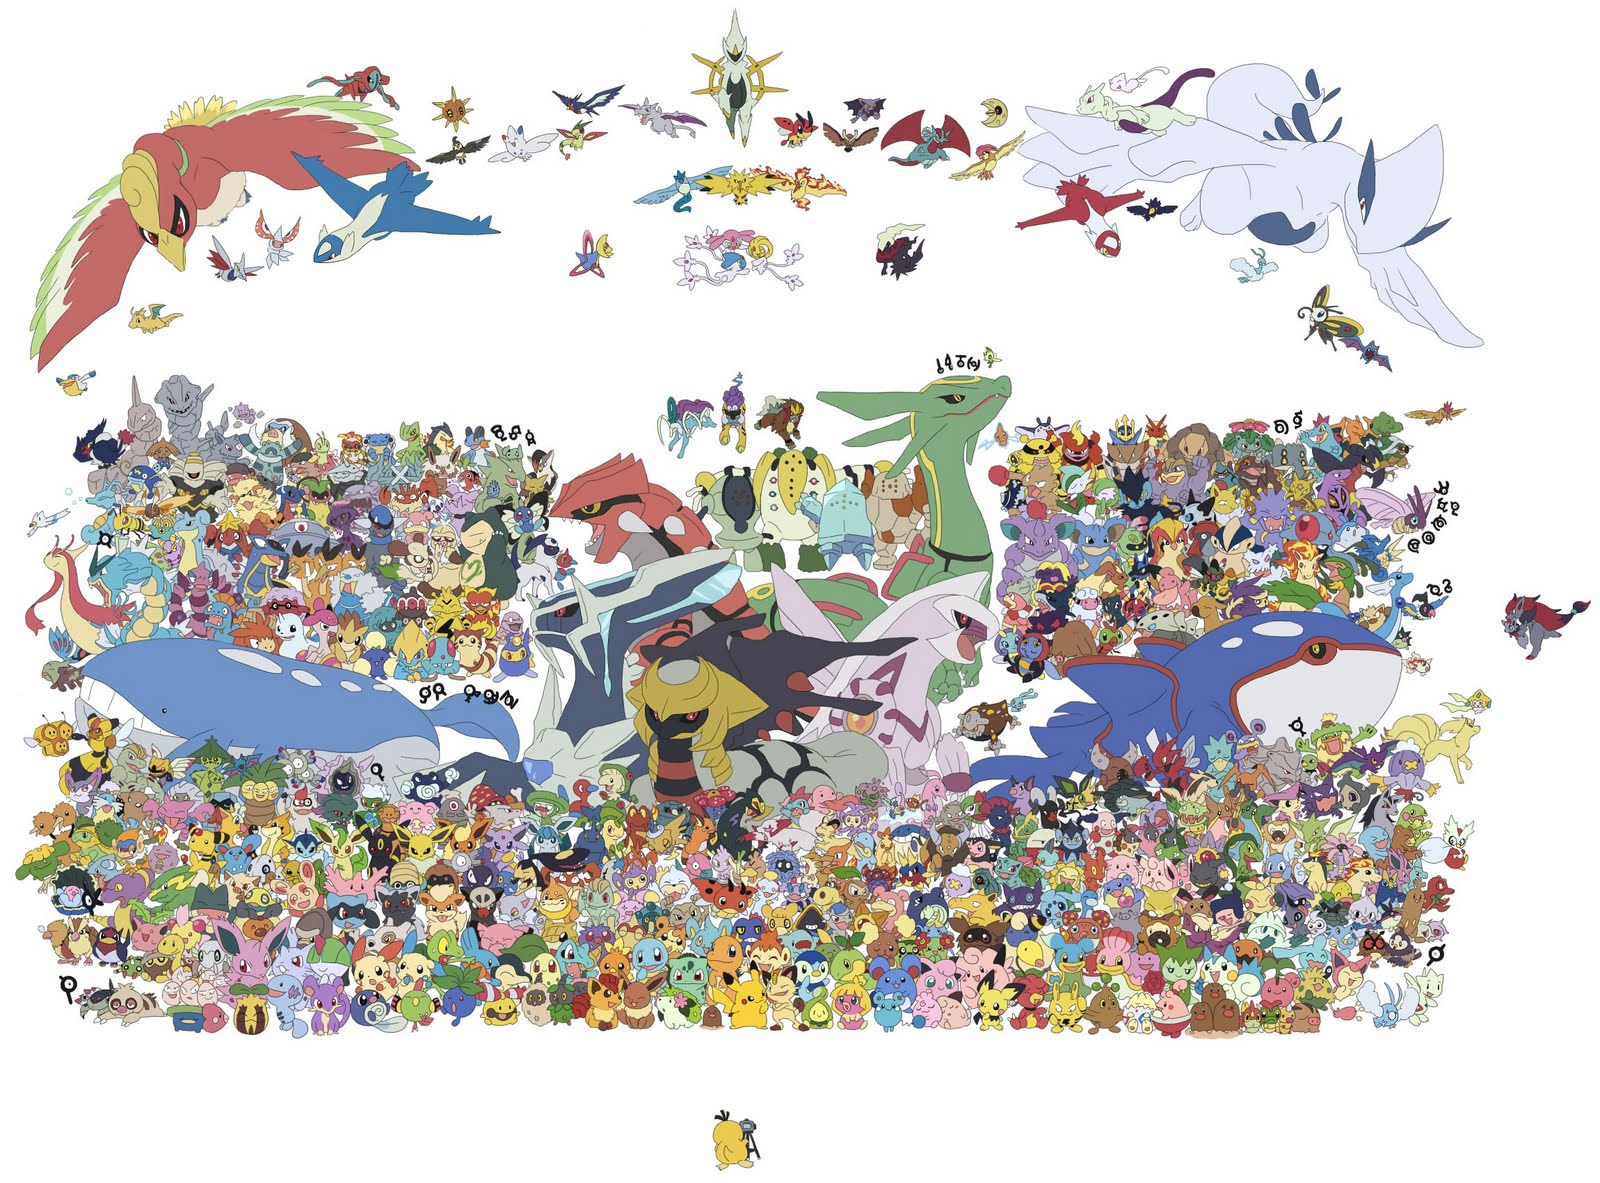 poke-gi-oh: todos os pokemons